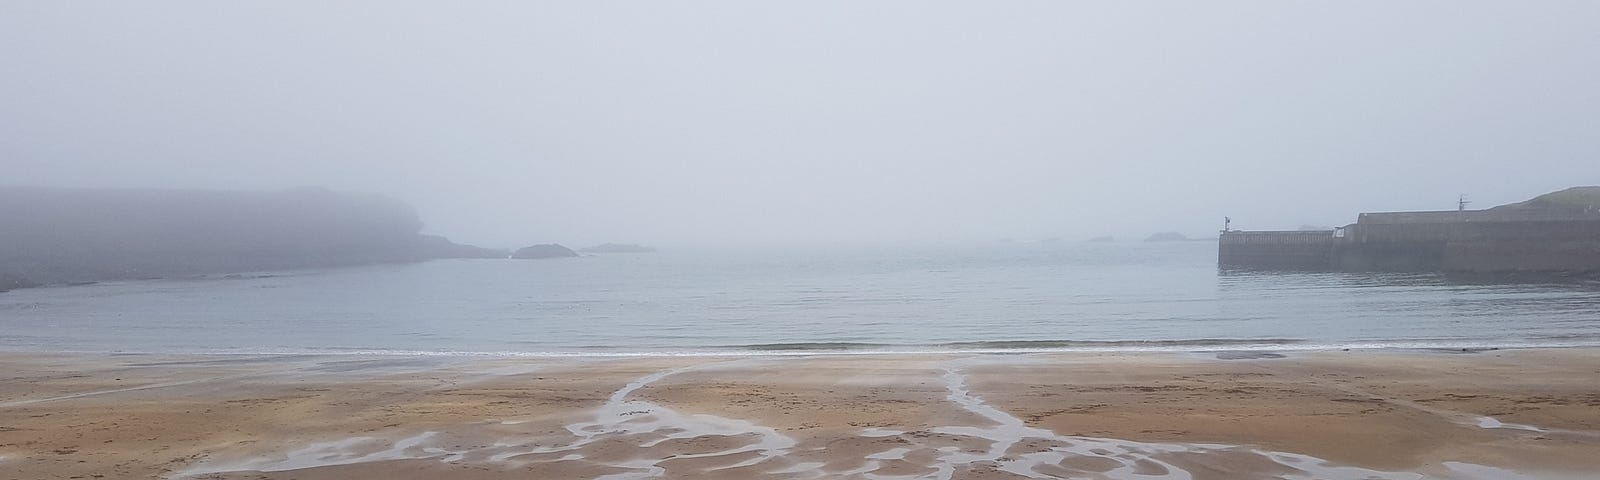 Eyemouth bay enshrouded in mist